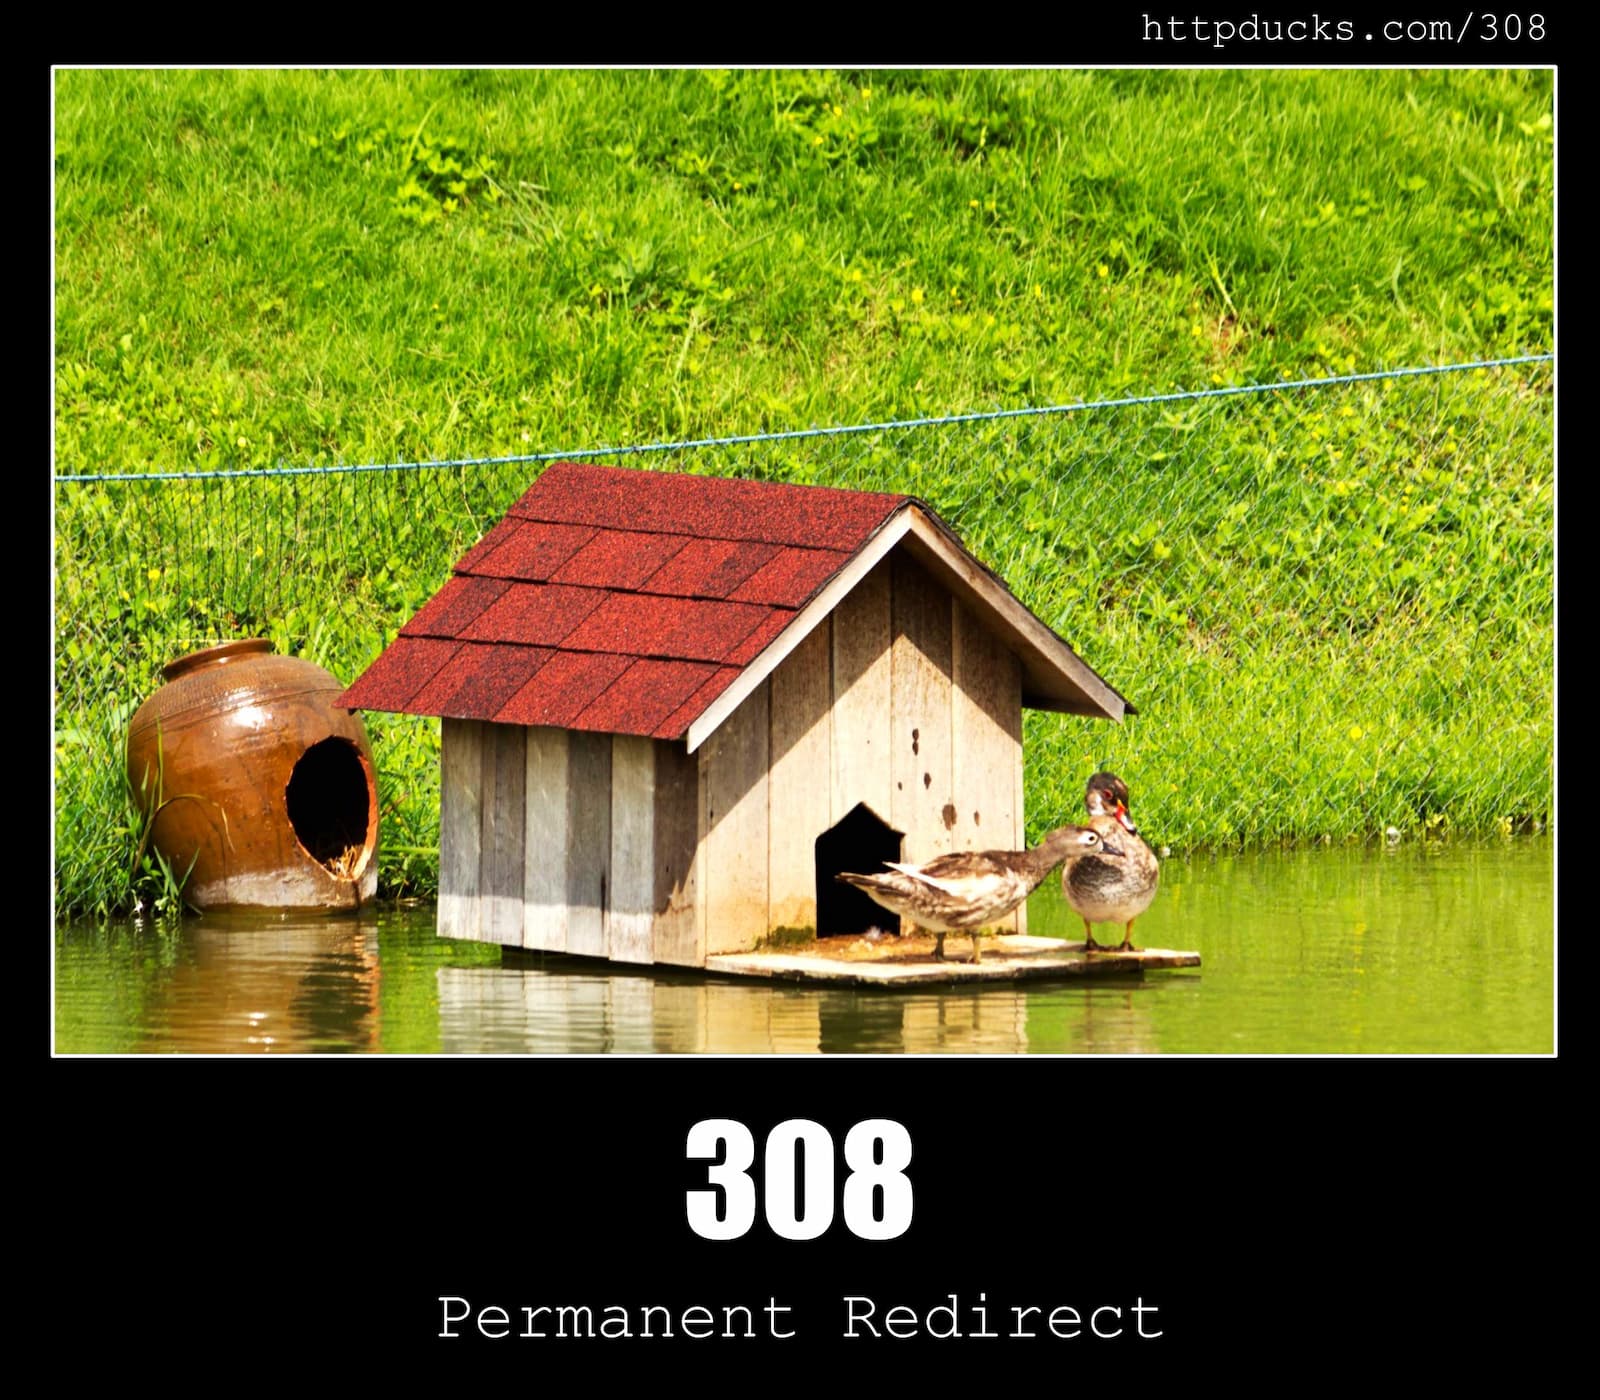 HTTP Status Code 308 Permanent Redirect & Ducks